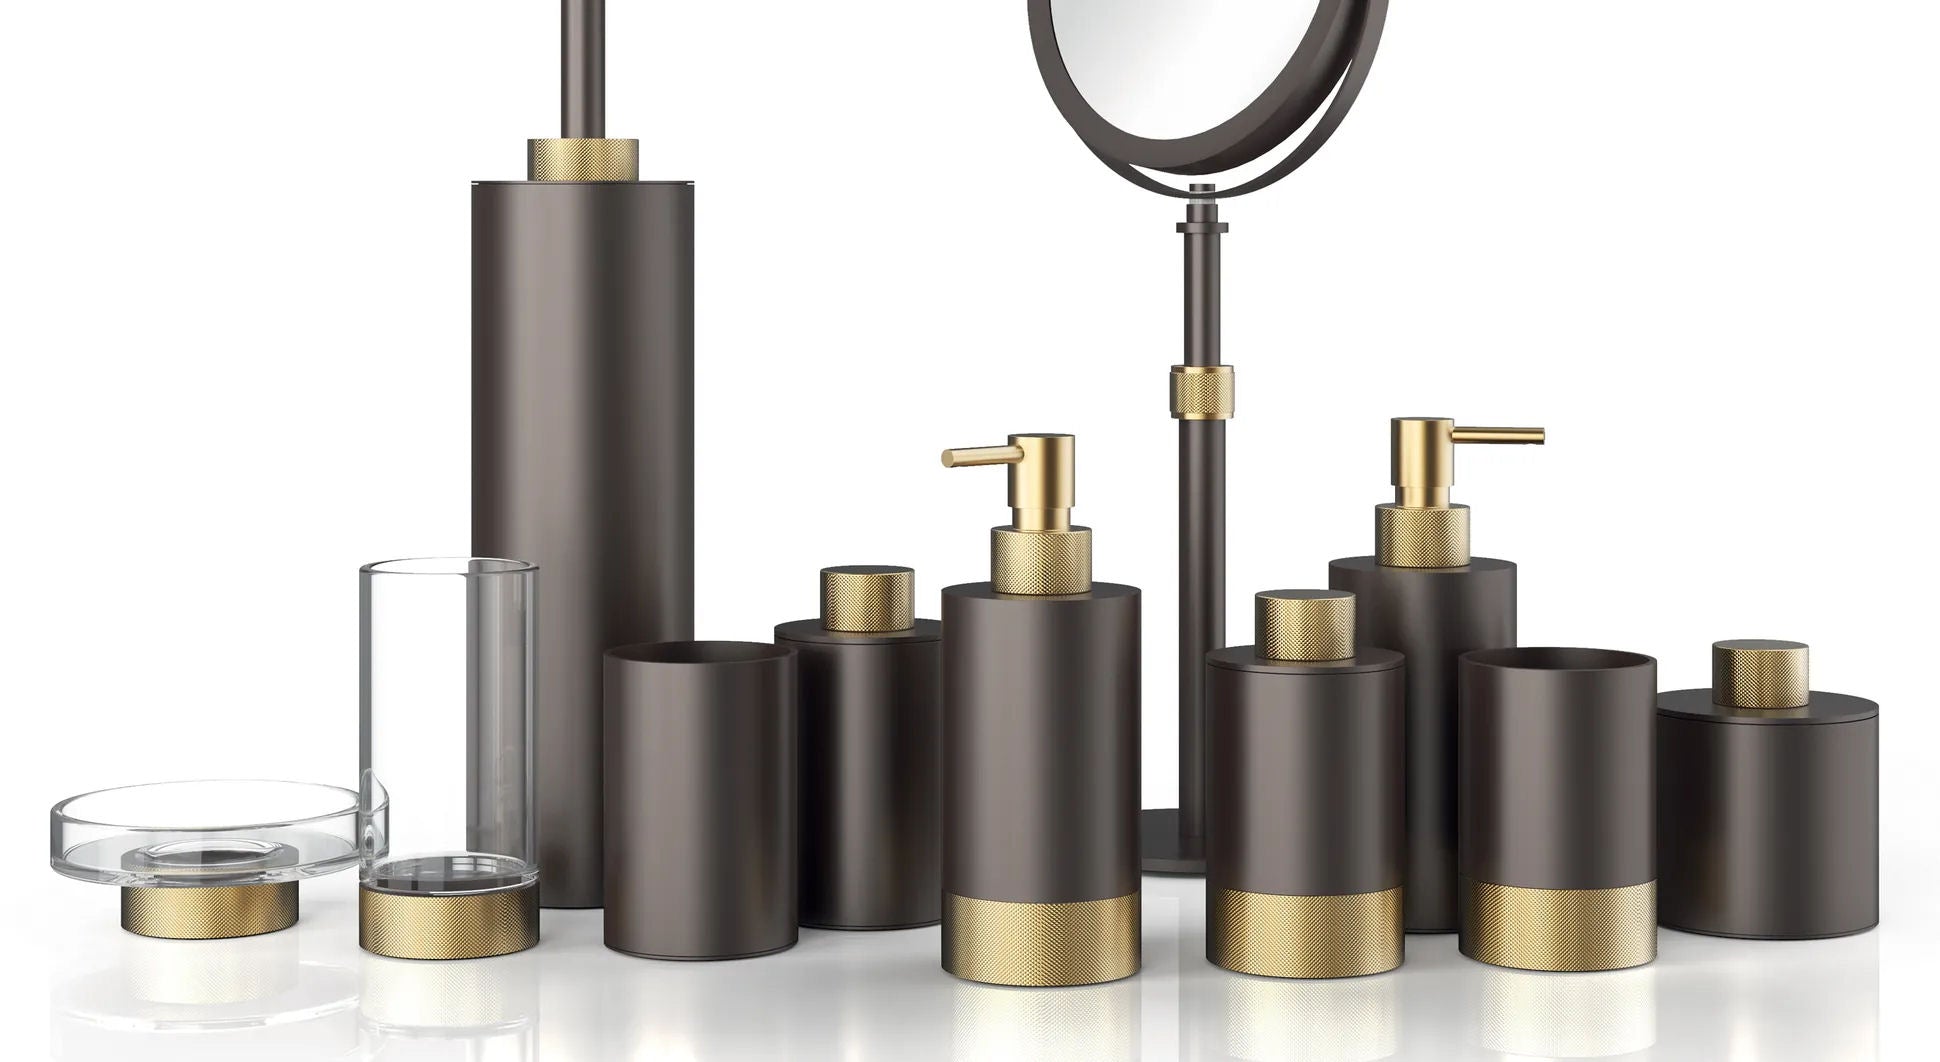 Luxury Bathroom Matt Gold & Dark Bronze Liquid Soap Dispenser - |VESIMI Design|